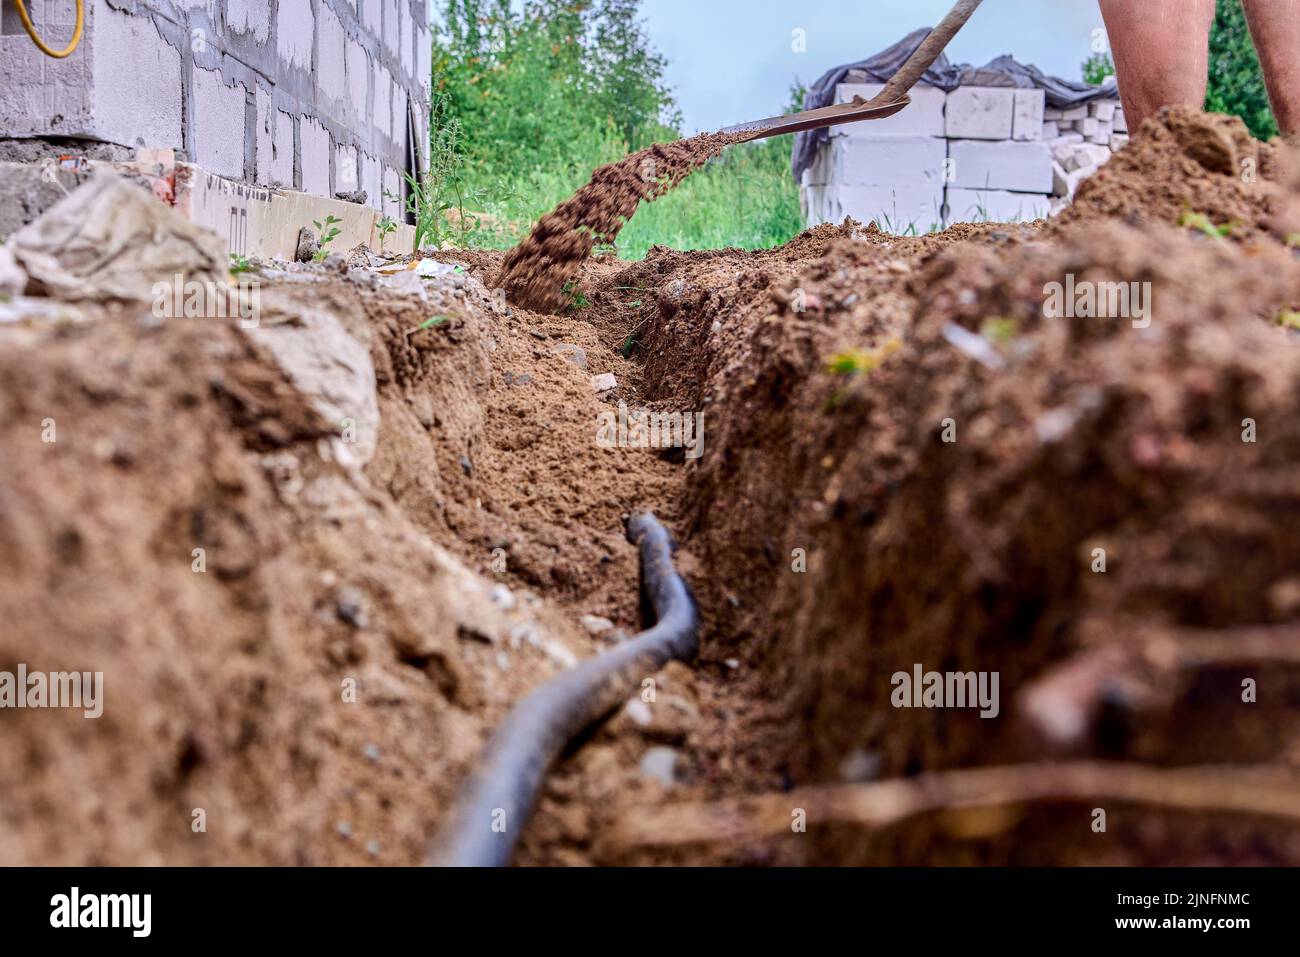 El trabajador de la construcción está cavando trincheras para colocar cables, usando una pala para excavar el suelo. Foto de stock